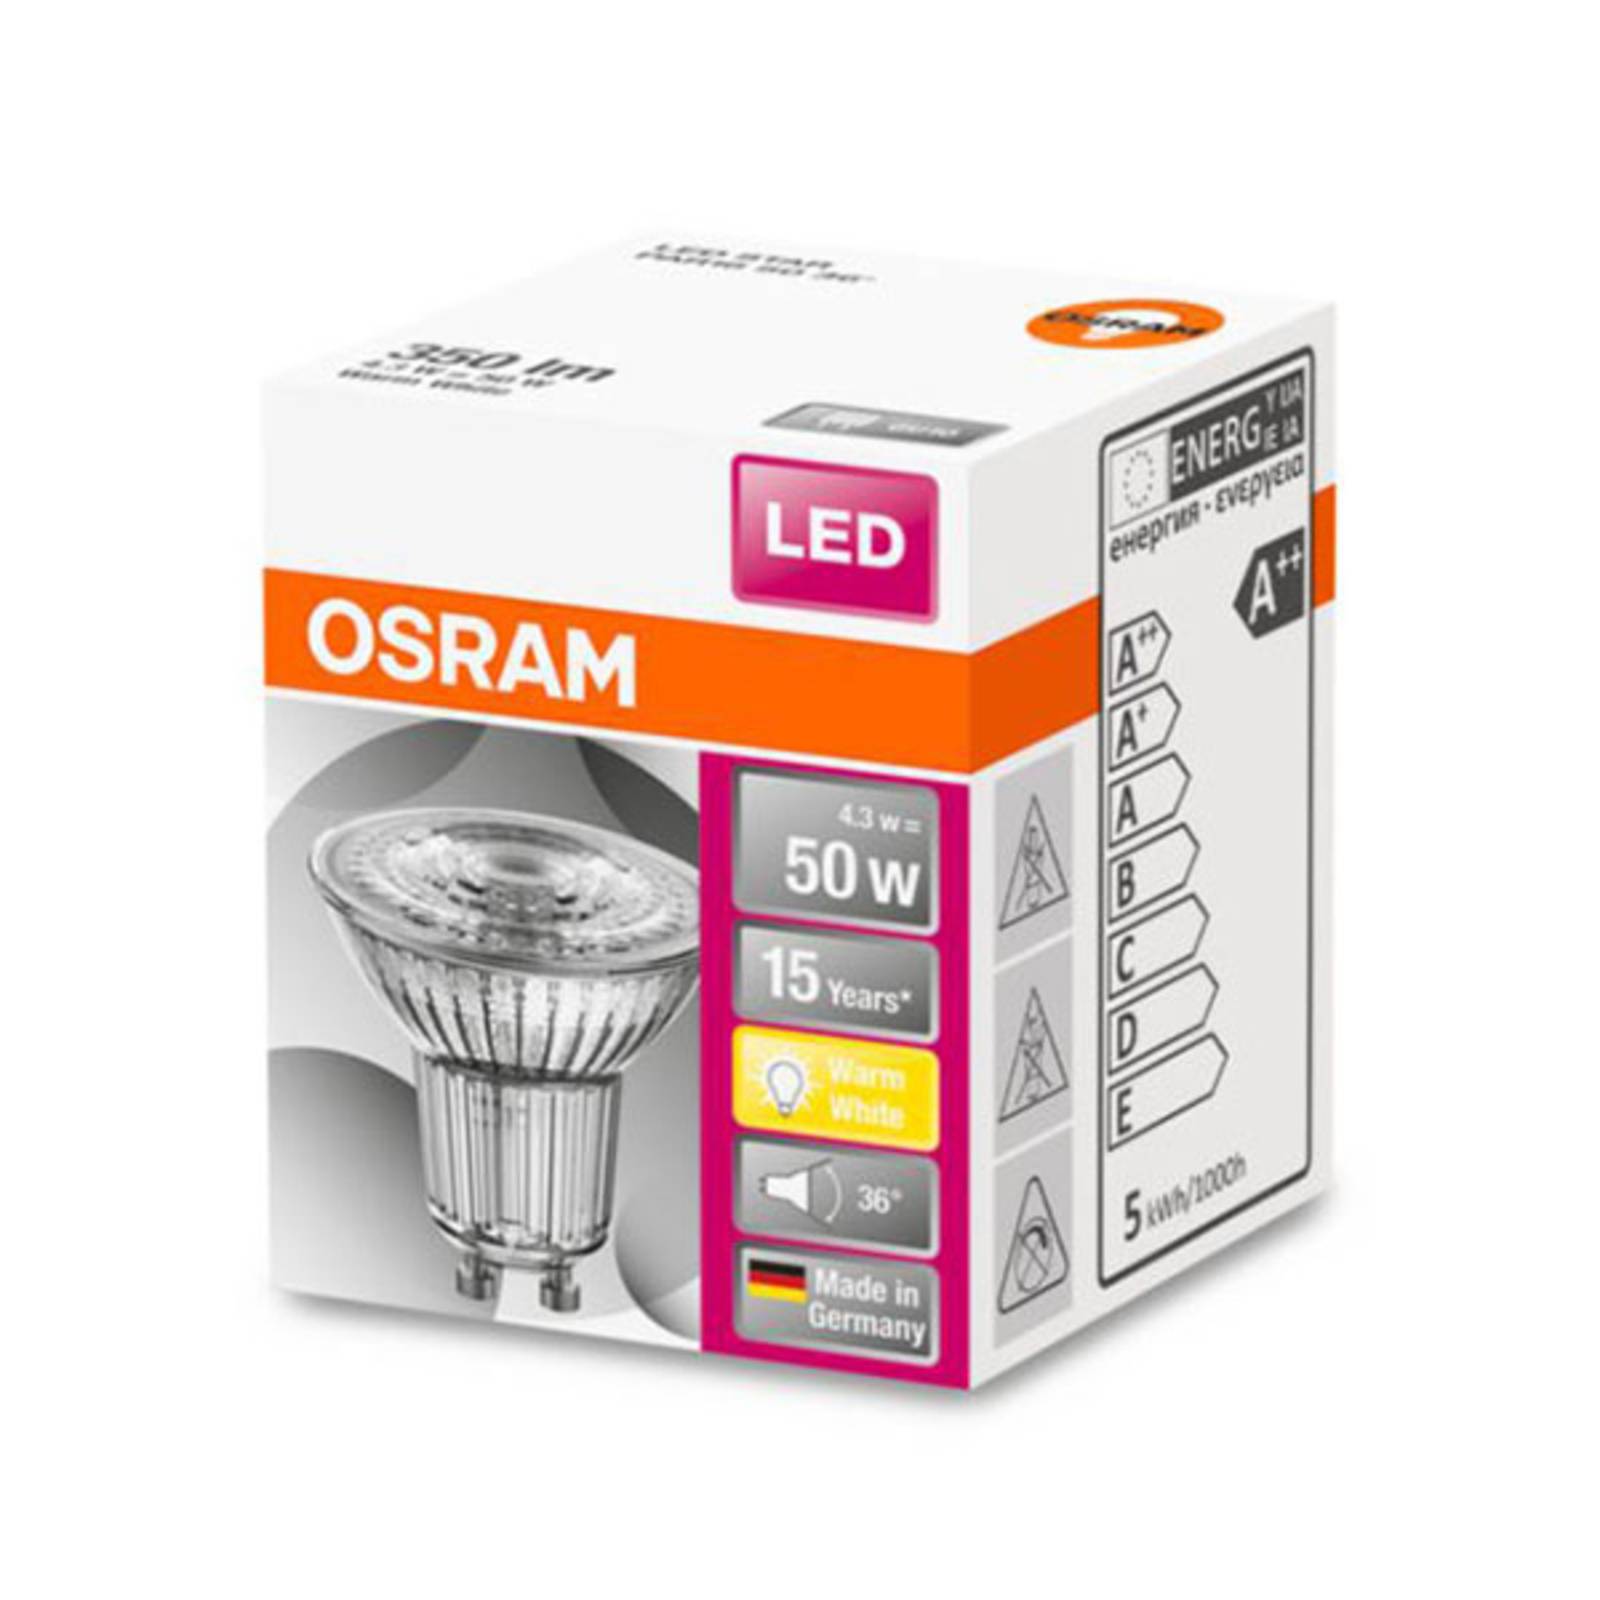 OSRAM LED reflektor Star GU10 4,3W meleg fehér 36°